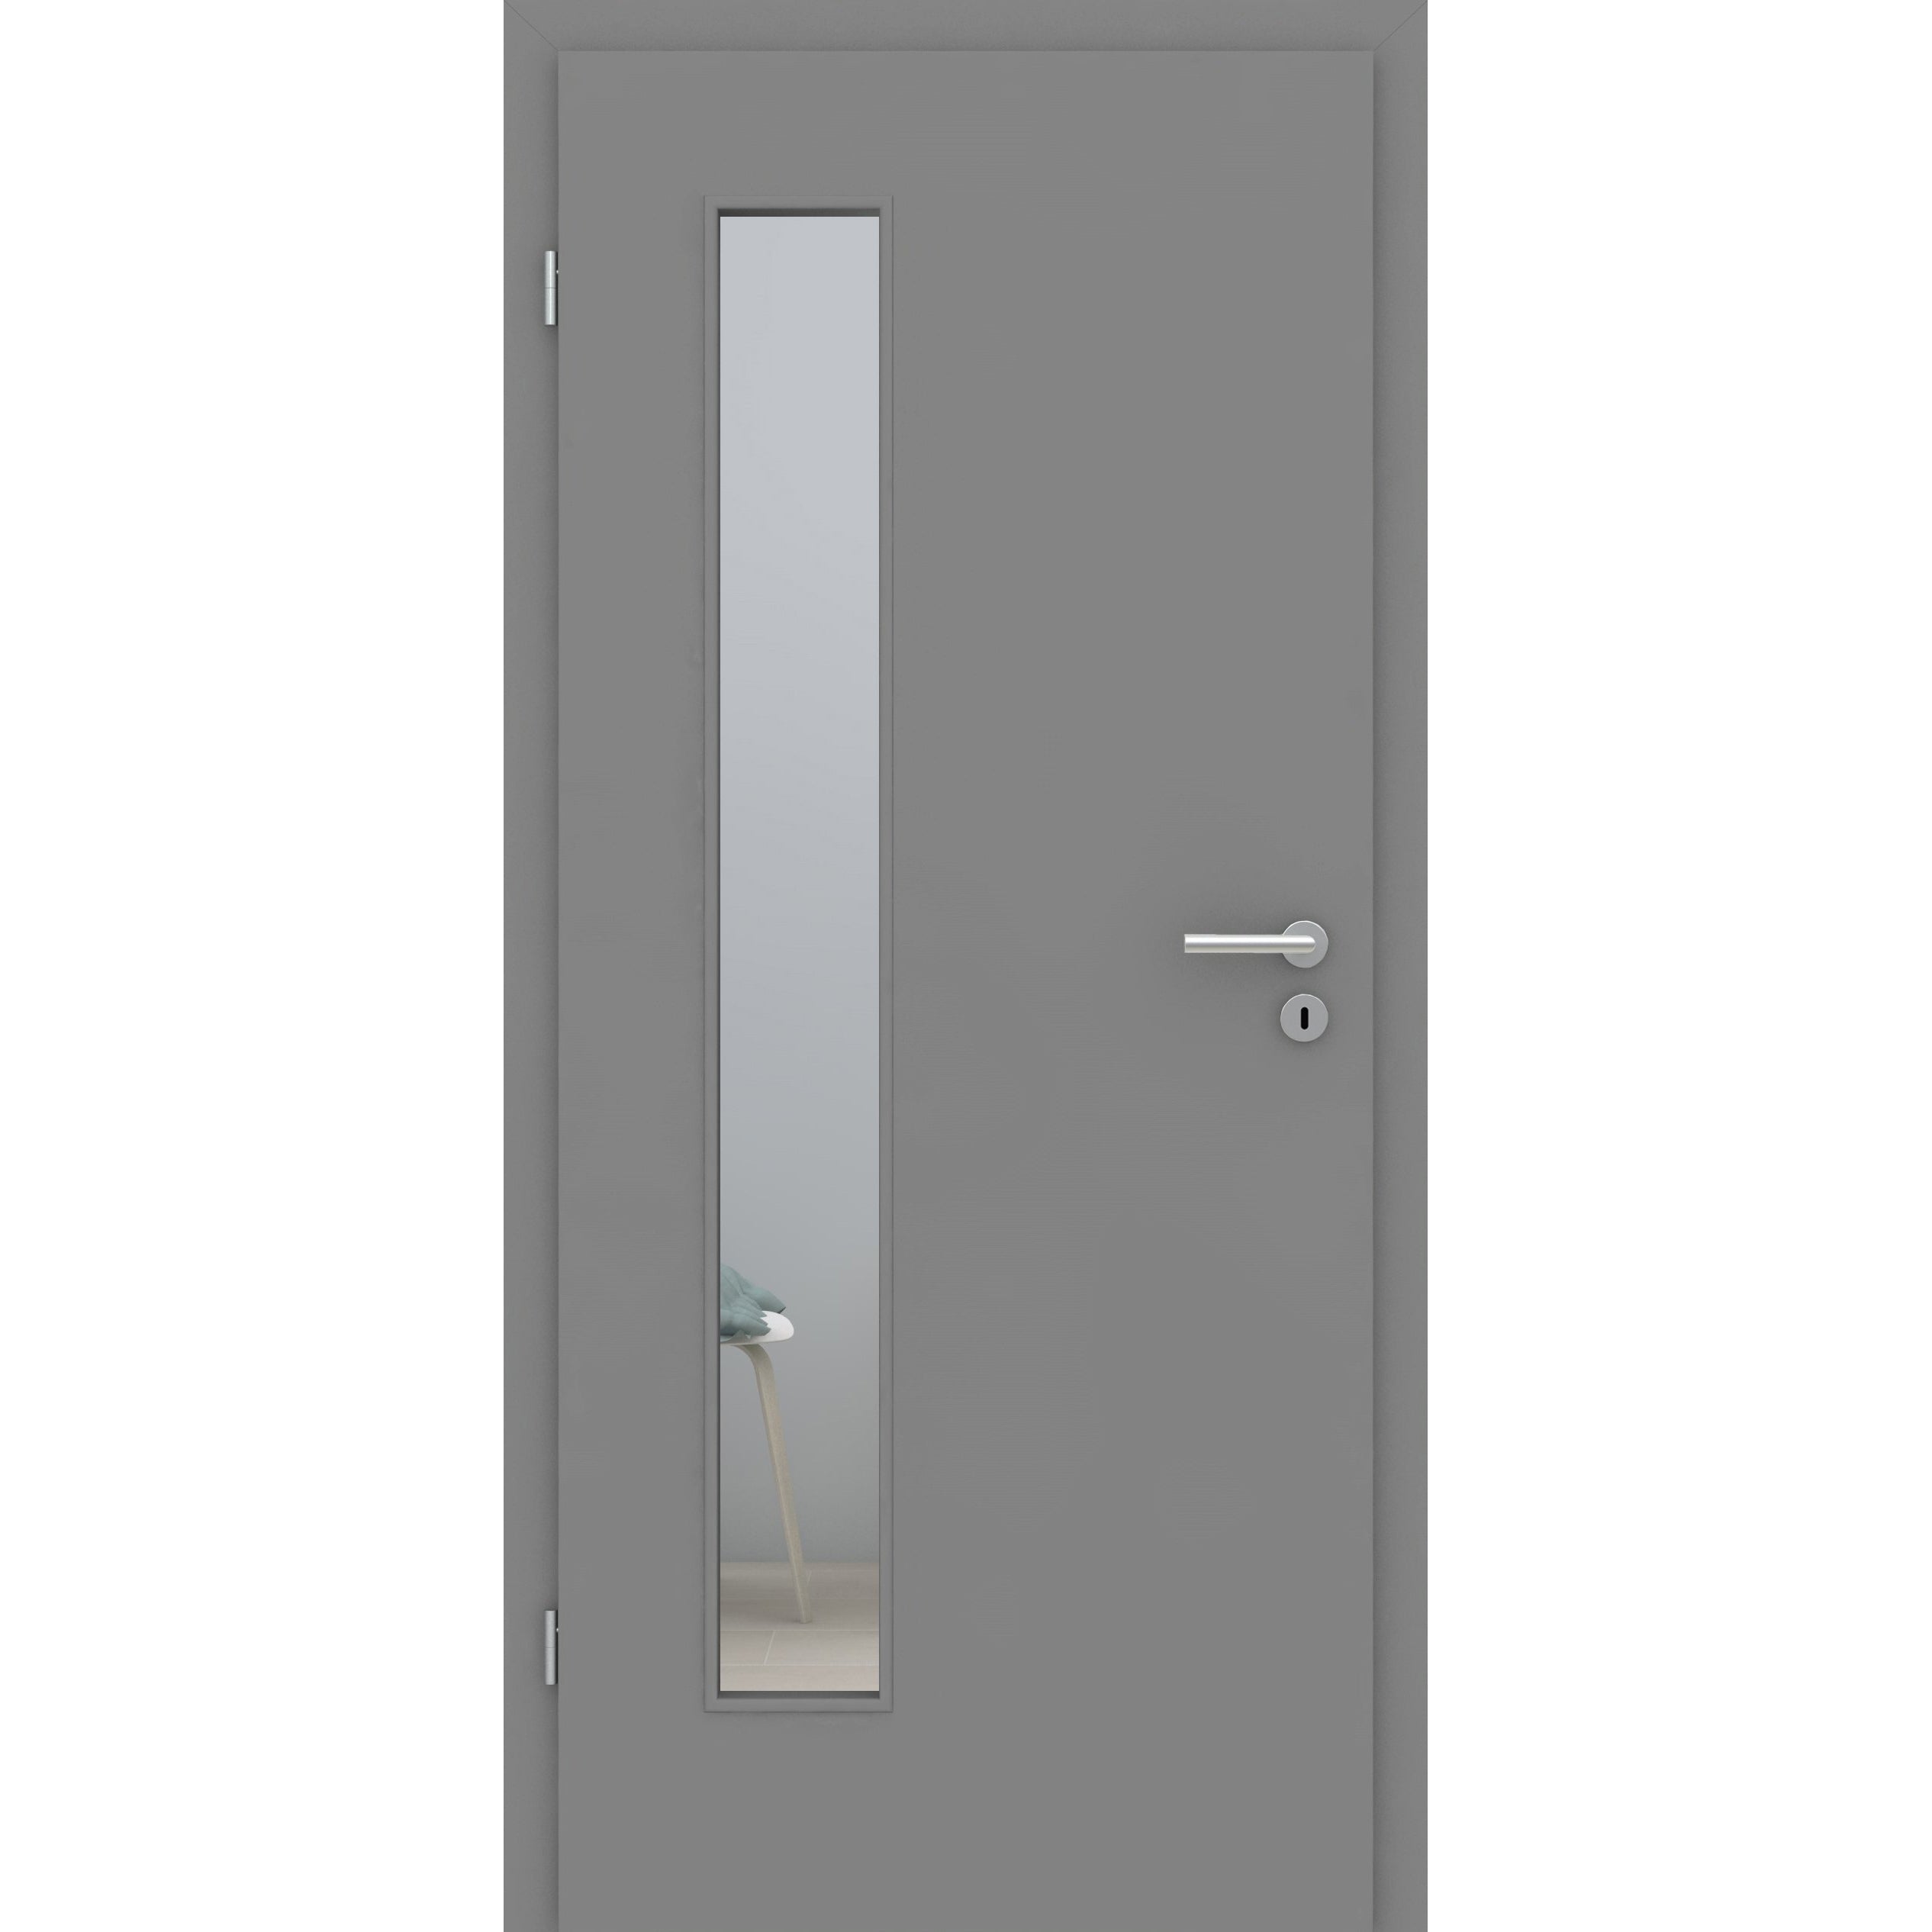 Zimmertür mit Lichtausschnitt grau glatt Designkante - Modell LAB